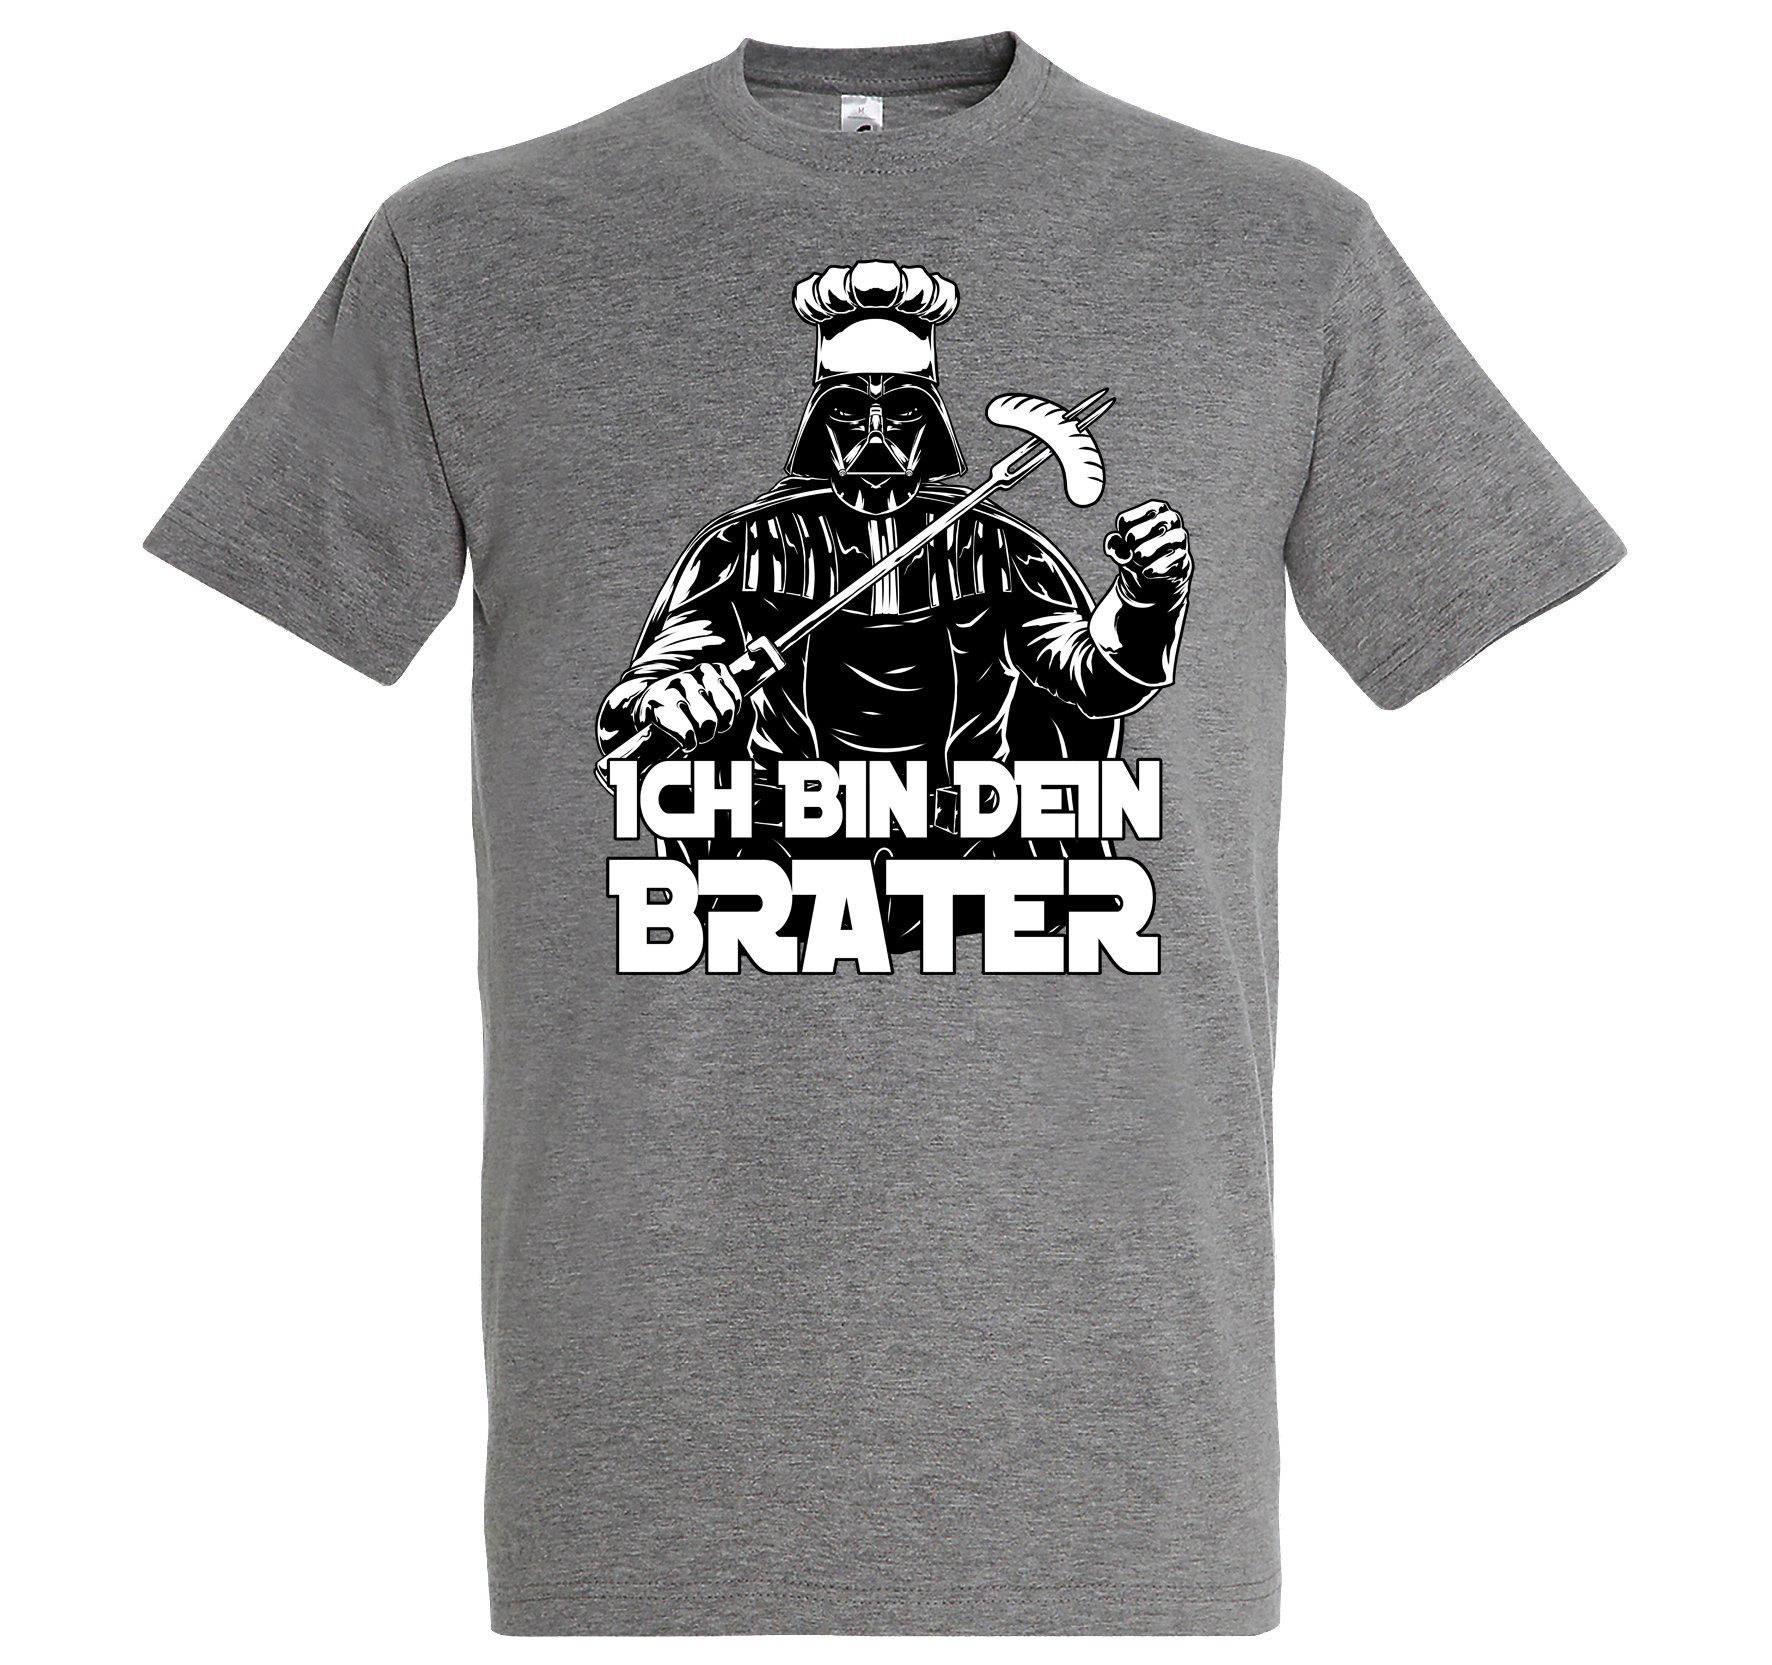 "Ich bin T-Shirt Herren mit Brater" lustigem Spruch Grau Designz Youth T-Shirt